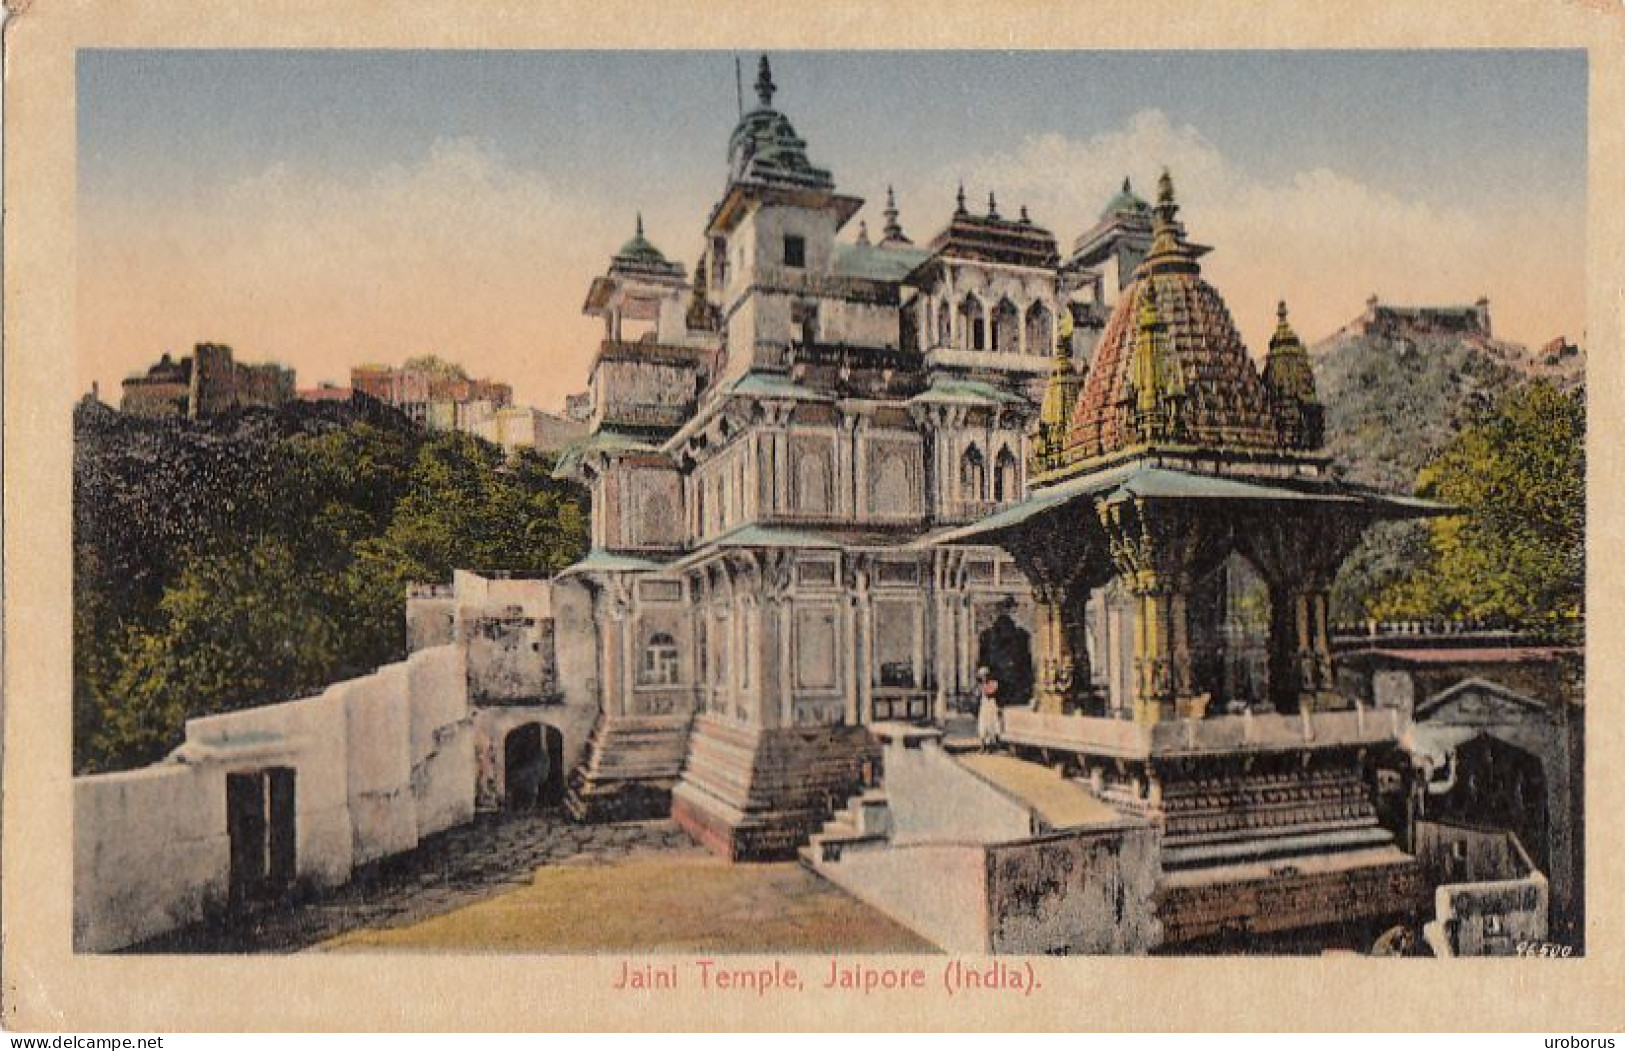 INDIA - Jaipur - Jaipore - Jaini Temple - India